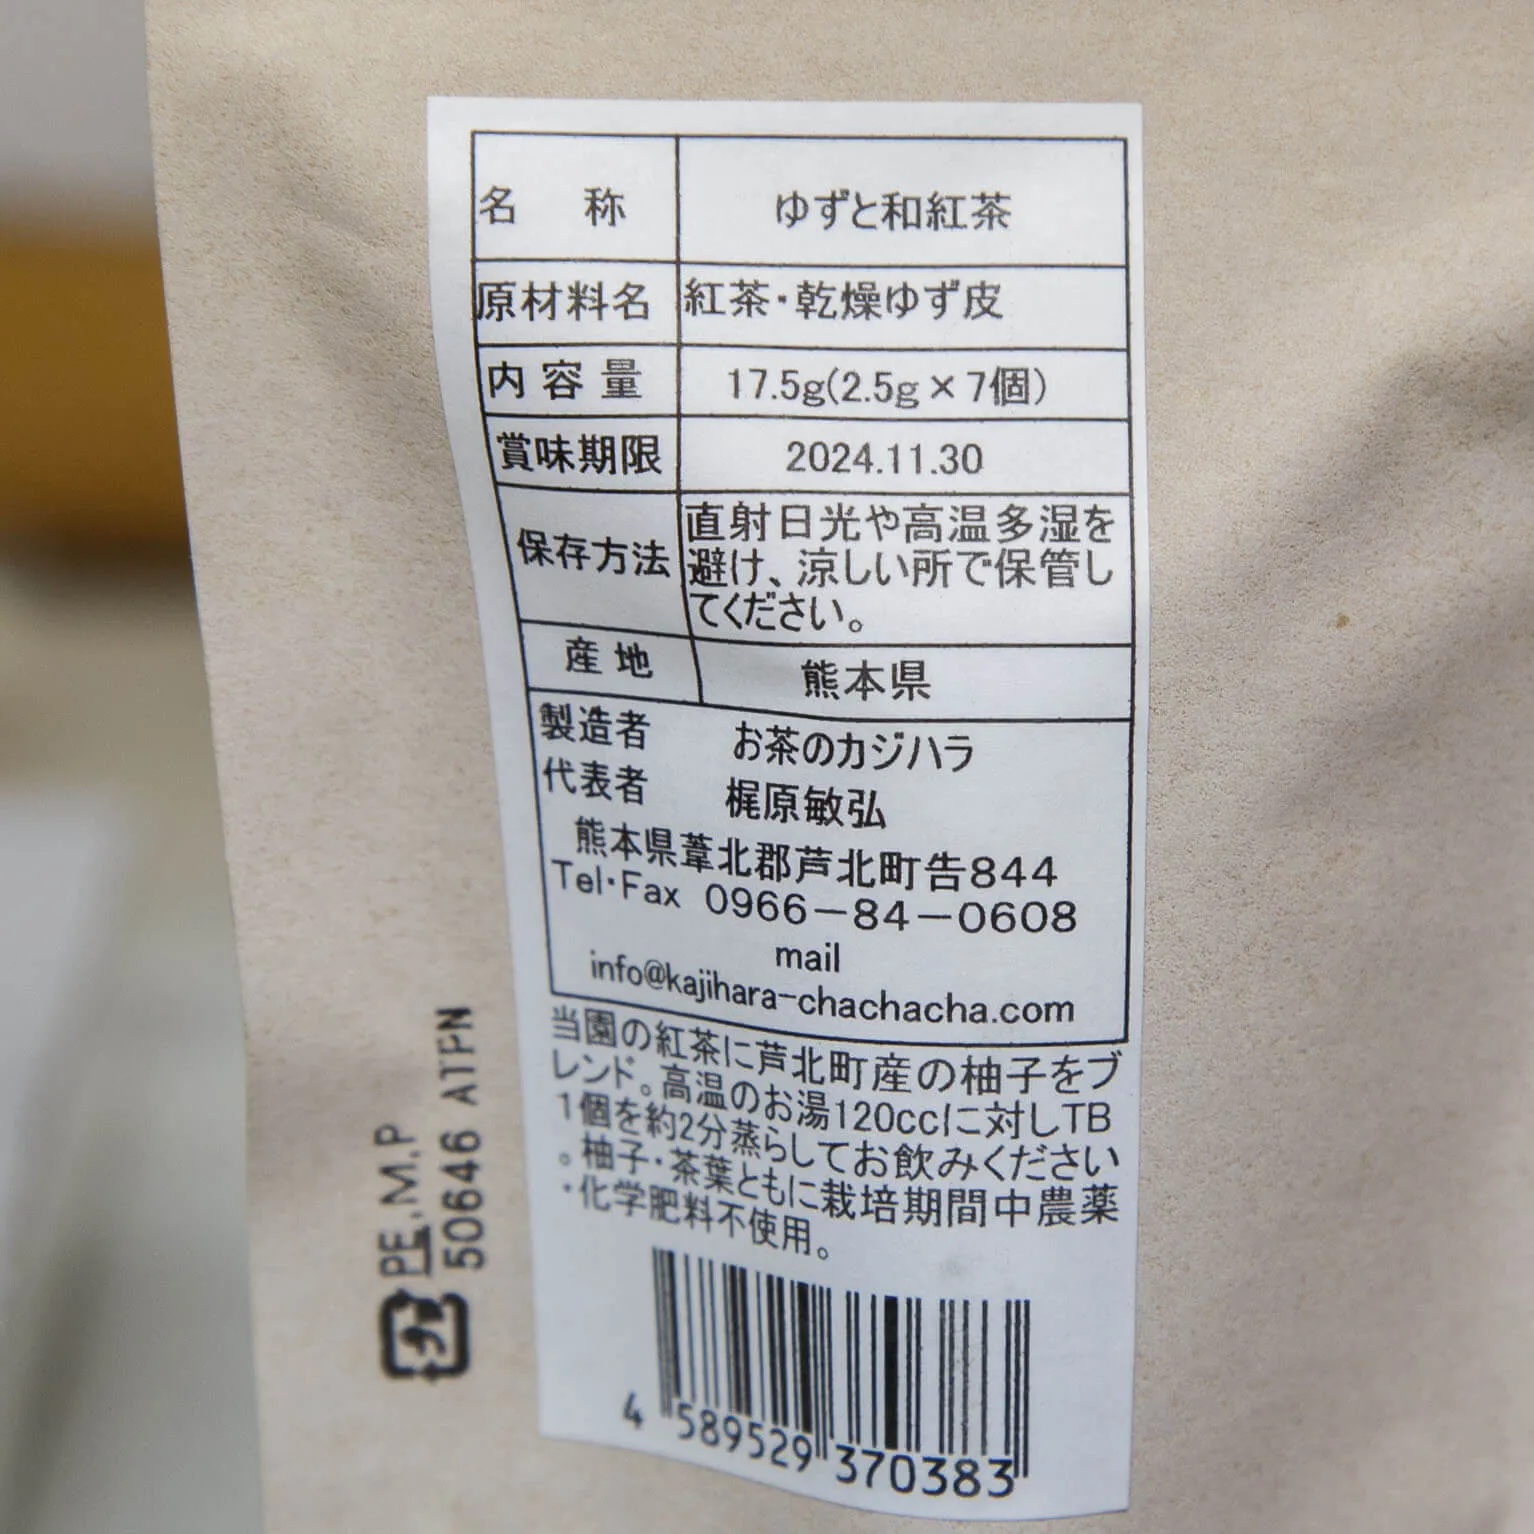 ゆずと和紅茶 (ティーバッグ) 2.5